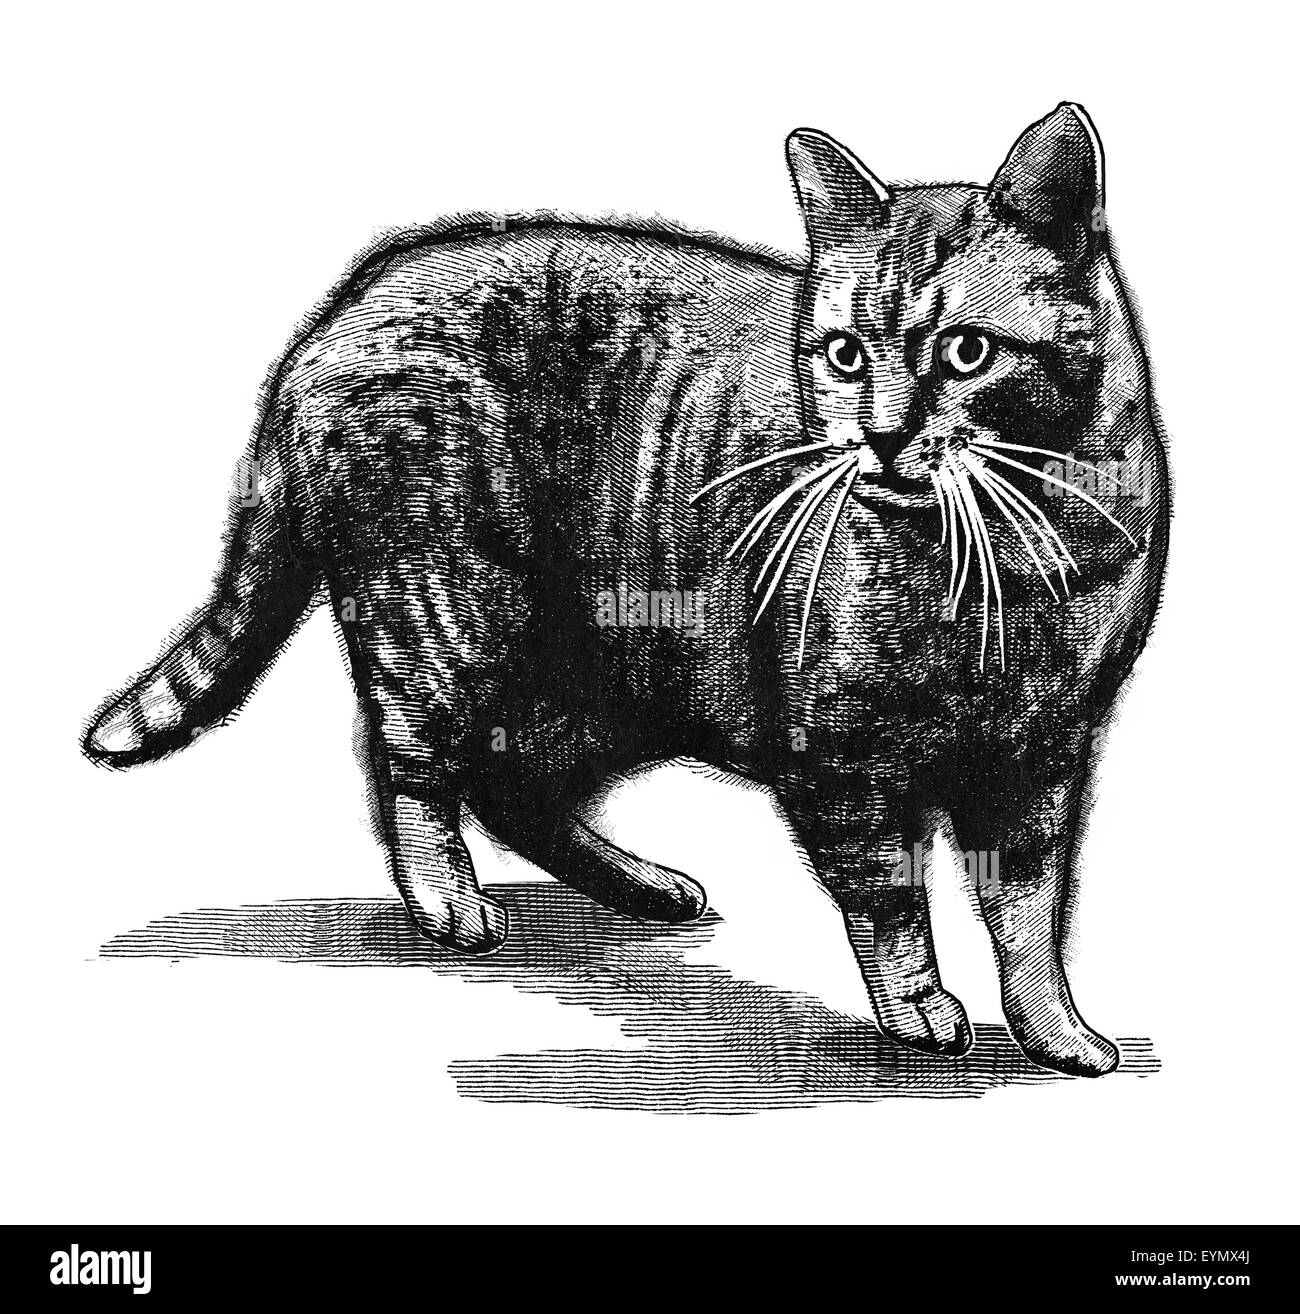 Originale illustrazione digitale di un gatto, nello stile delle vecchie incisioni. Foto Stock